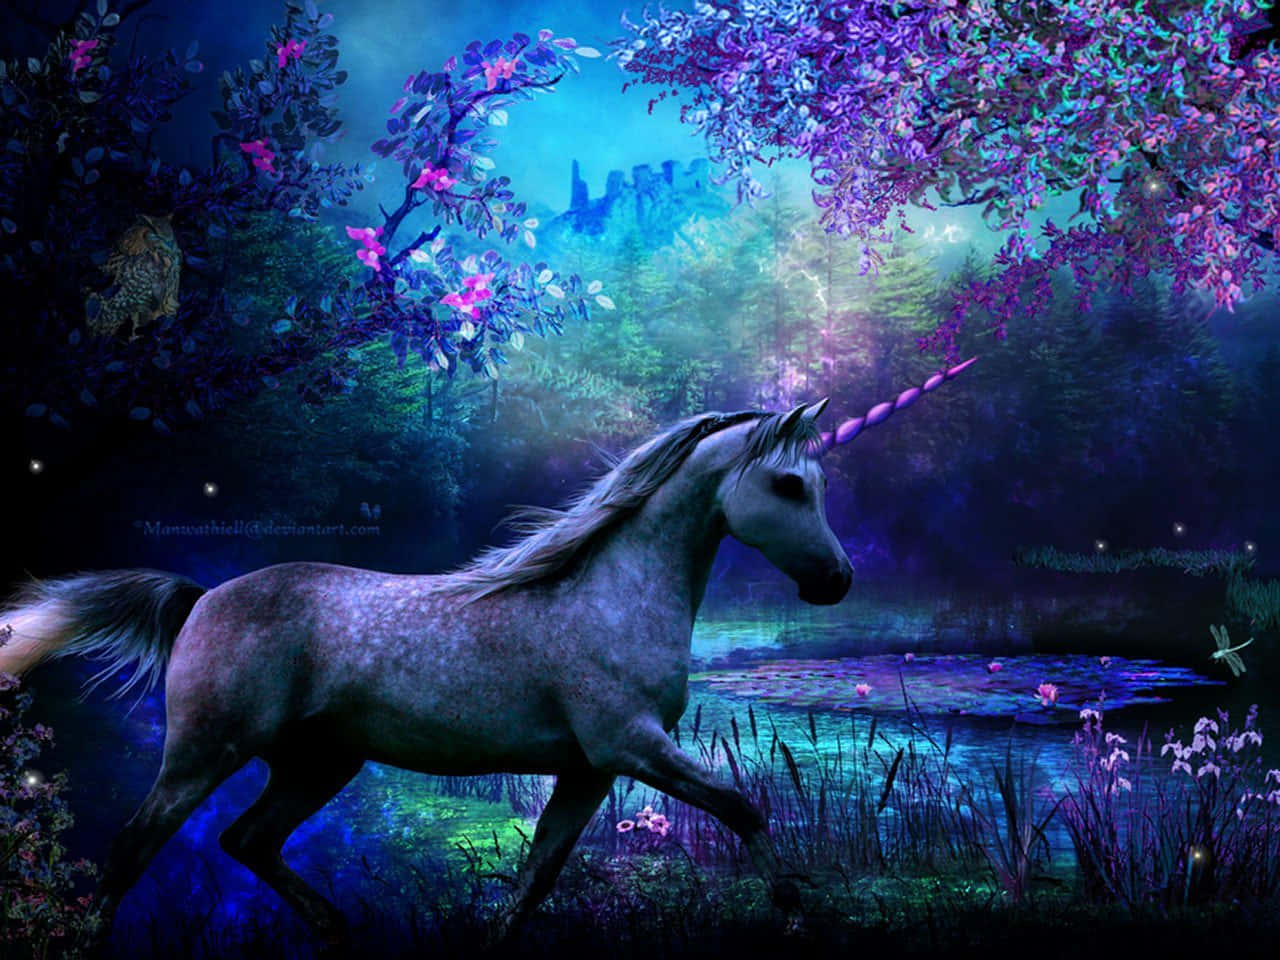 fantasy unicorn wallpaper